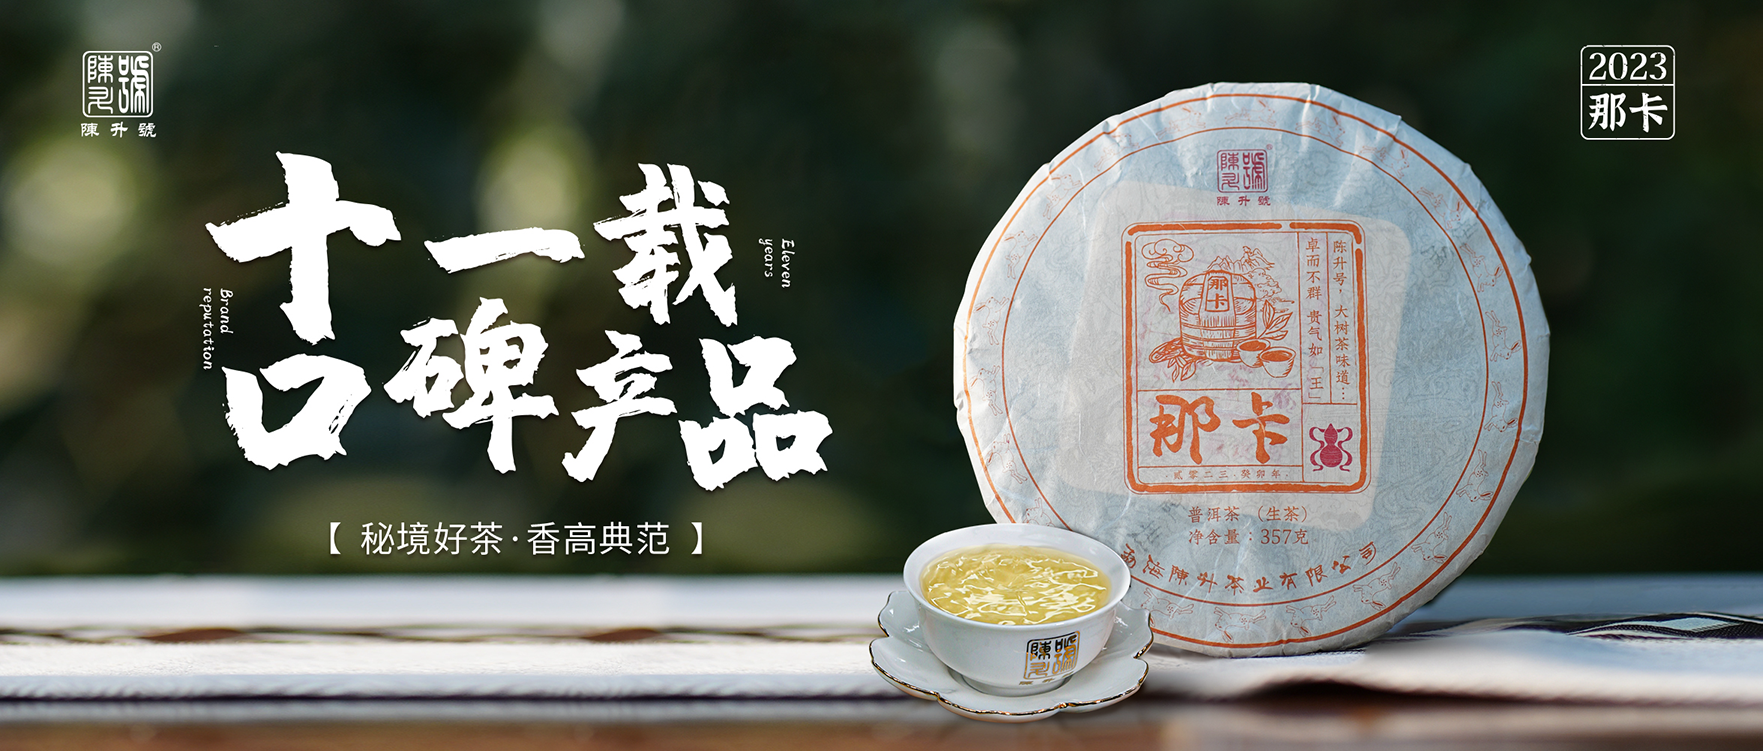 秘境好茶·香高典范 | 陈升号11年口碑产品“那卡”面市